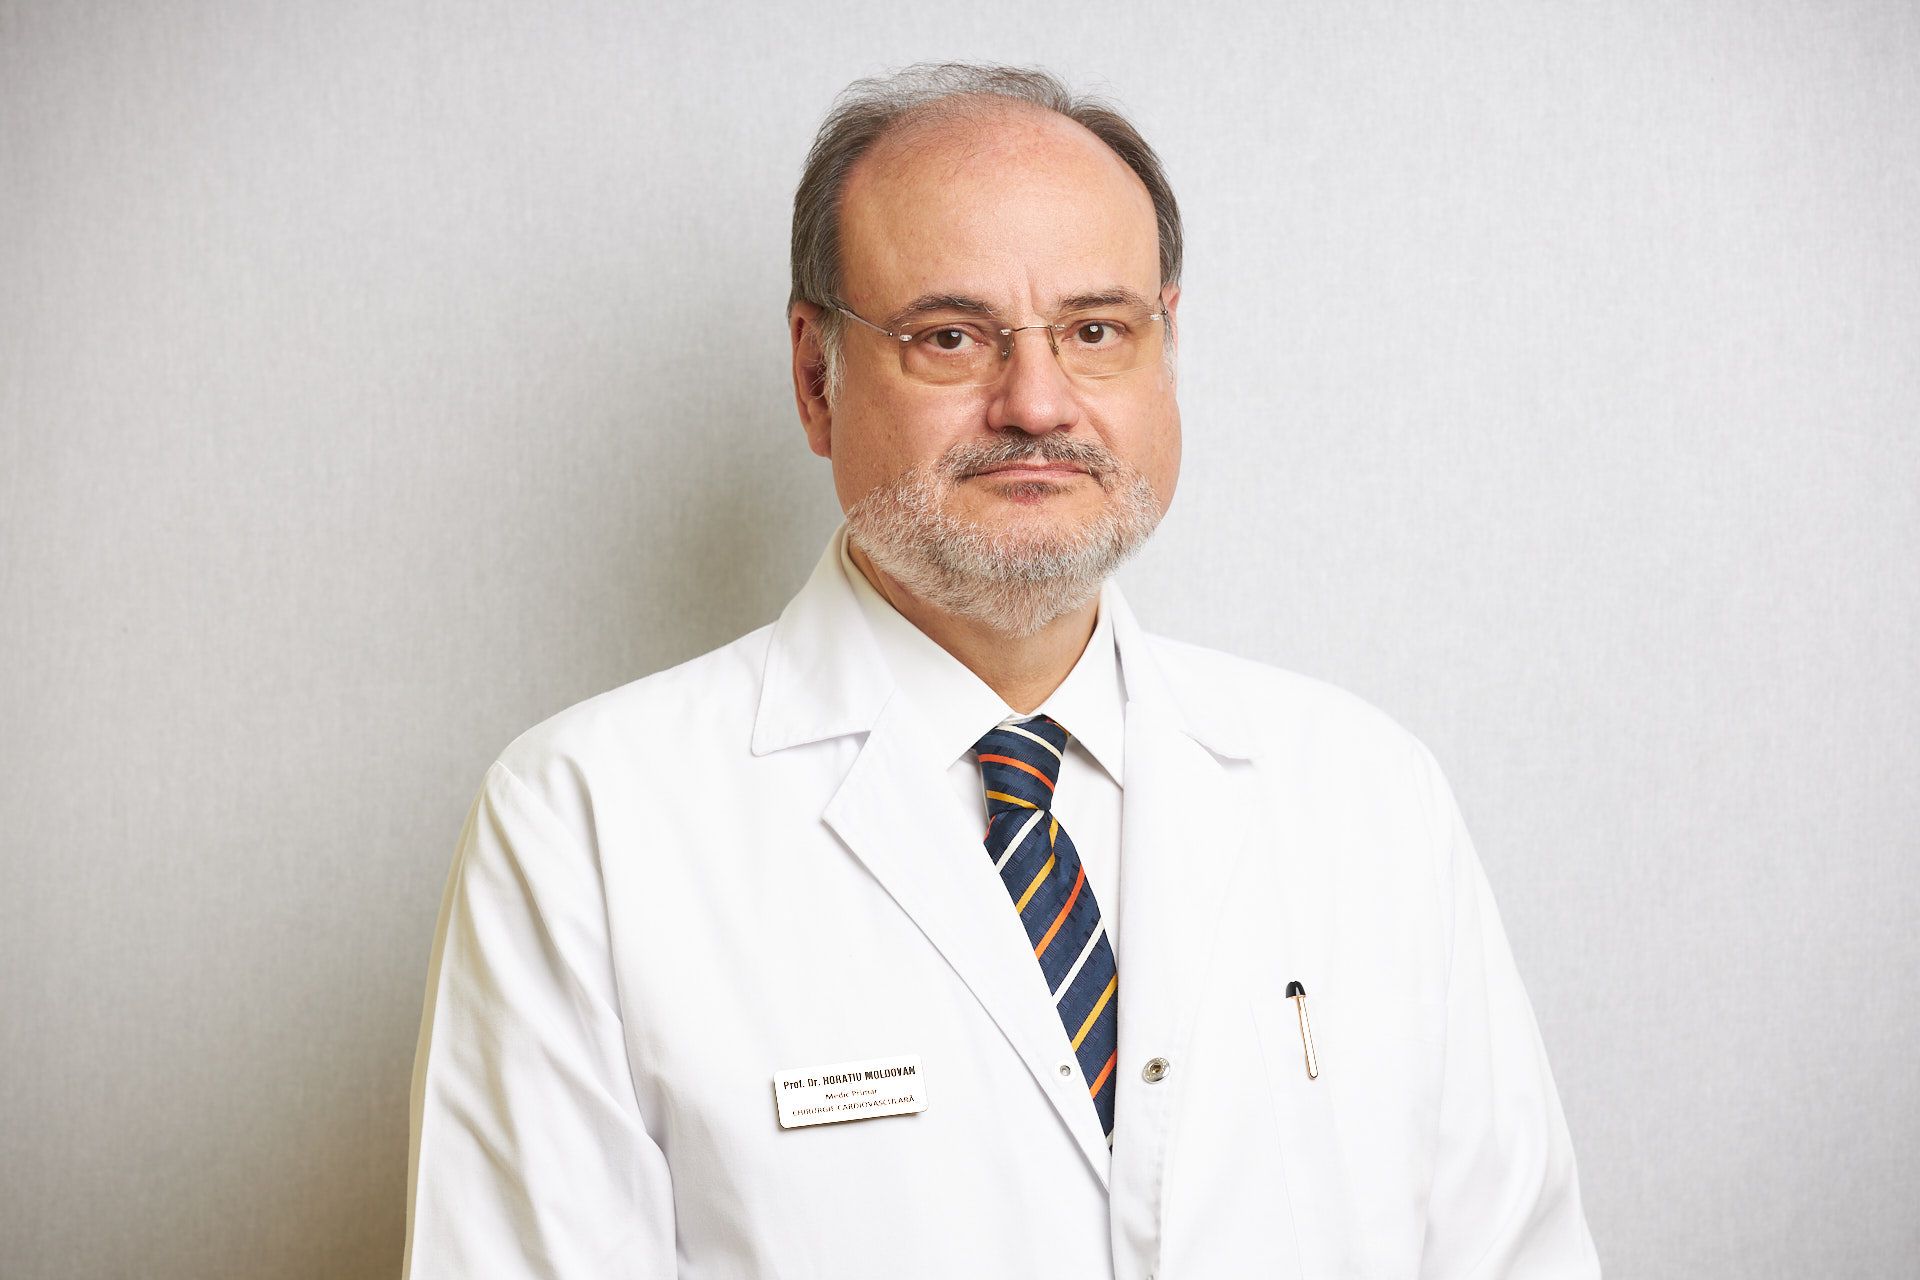 O soluție curajoasă, propusă de prof. dr. Horațiu Moldovan, a salvat viața unui pacient